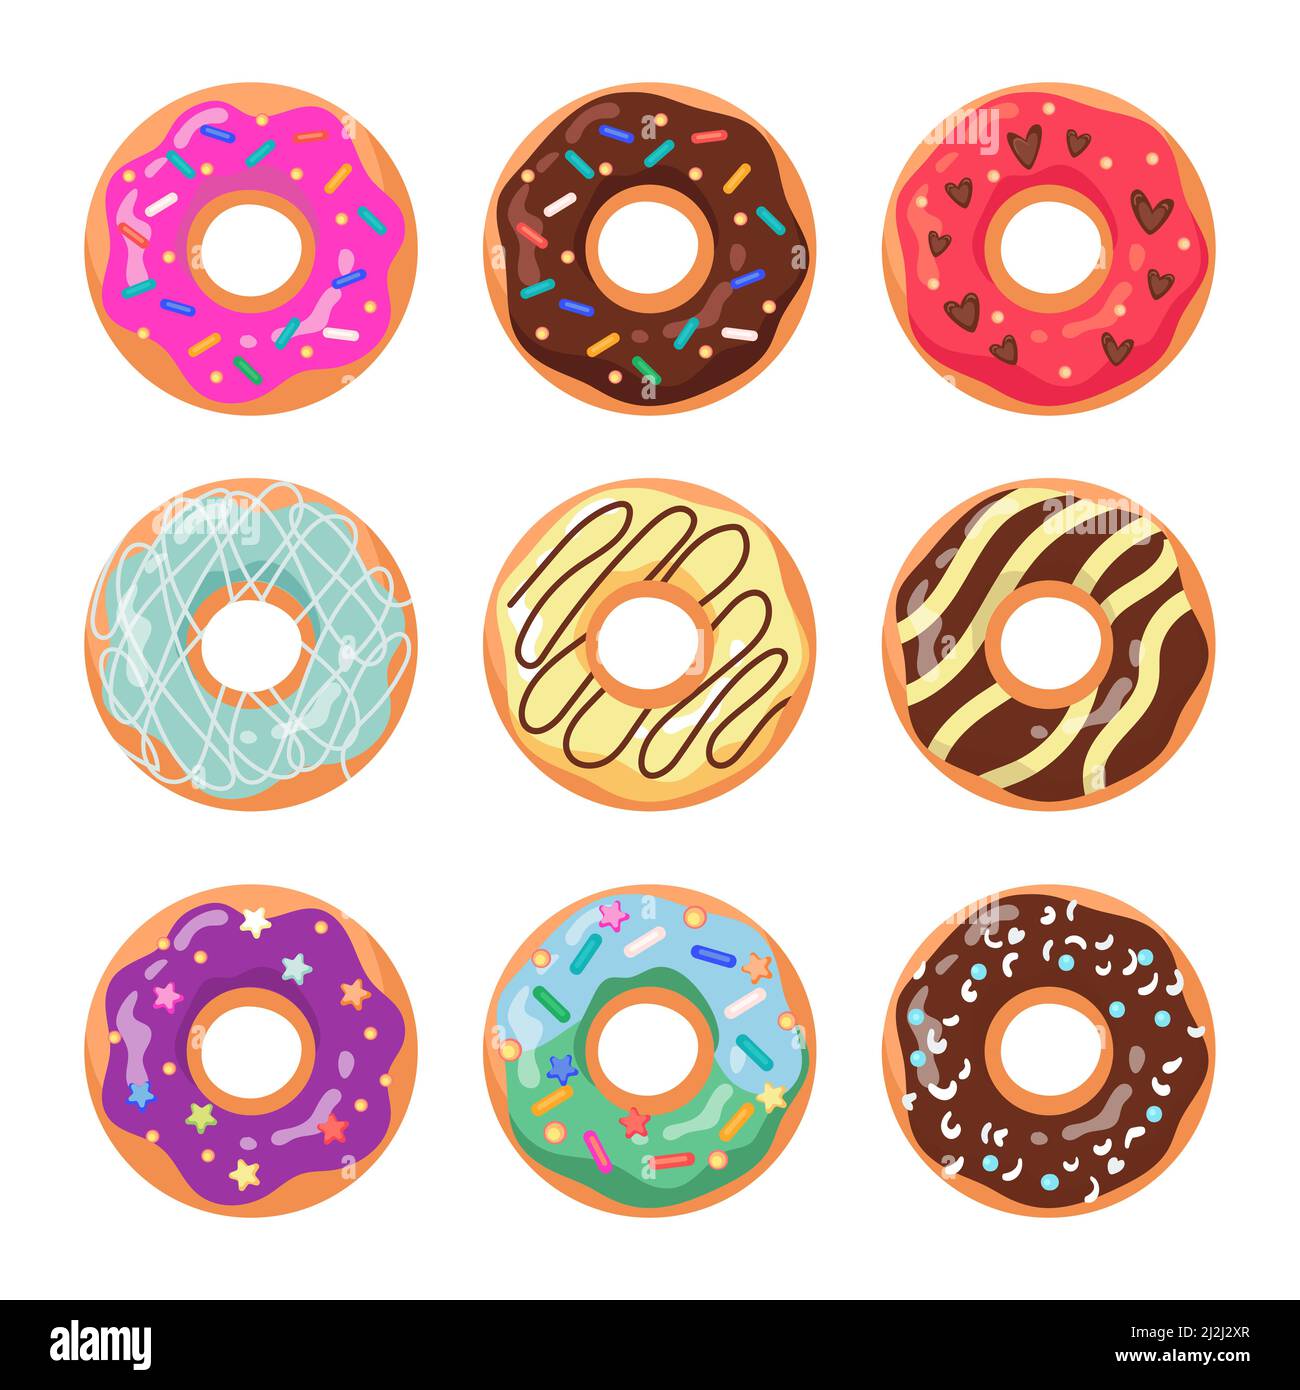 Glasierte Donuts flache Vektor-Illustrationen-Set. Trendiges Donuts-Muster, süßer Kreis orange Kuchen aus Teig mit Schokoladencreme isoliert auf weißem Bac Stock Vektor